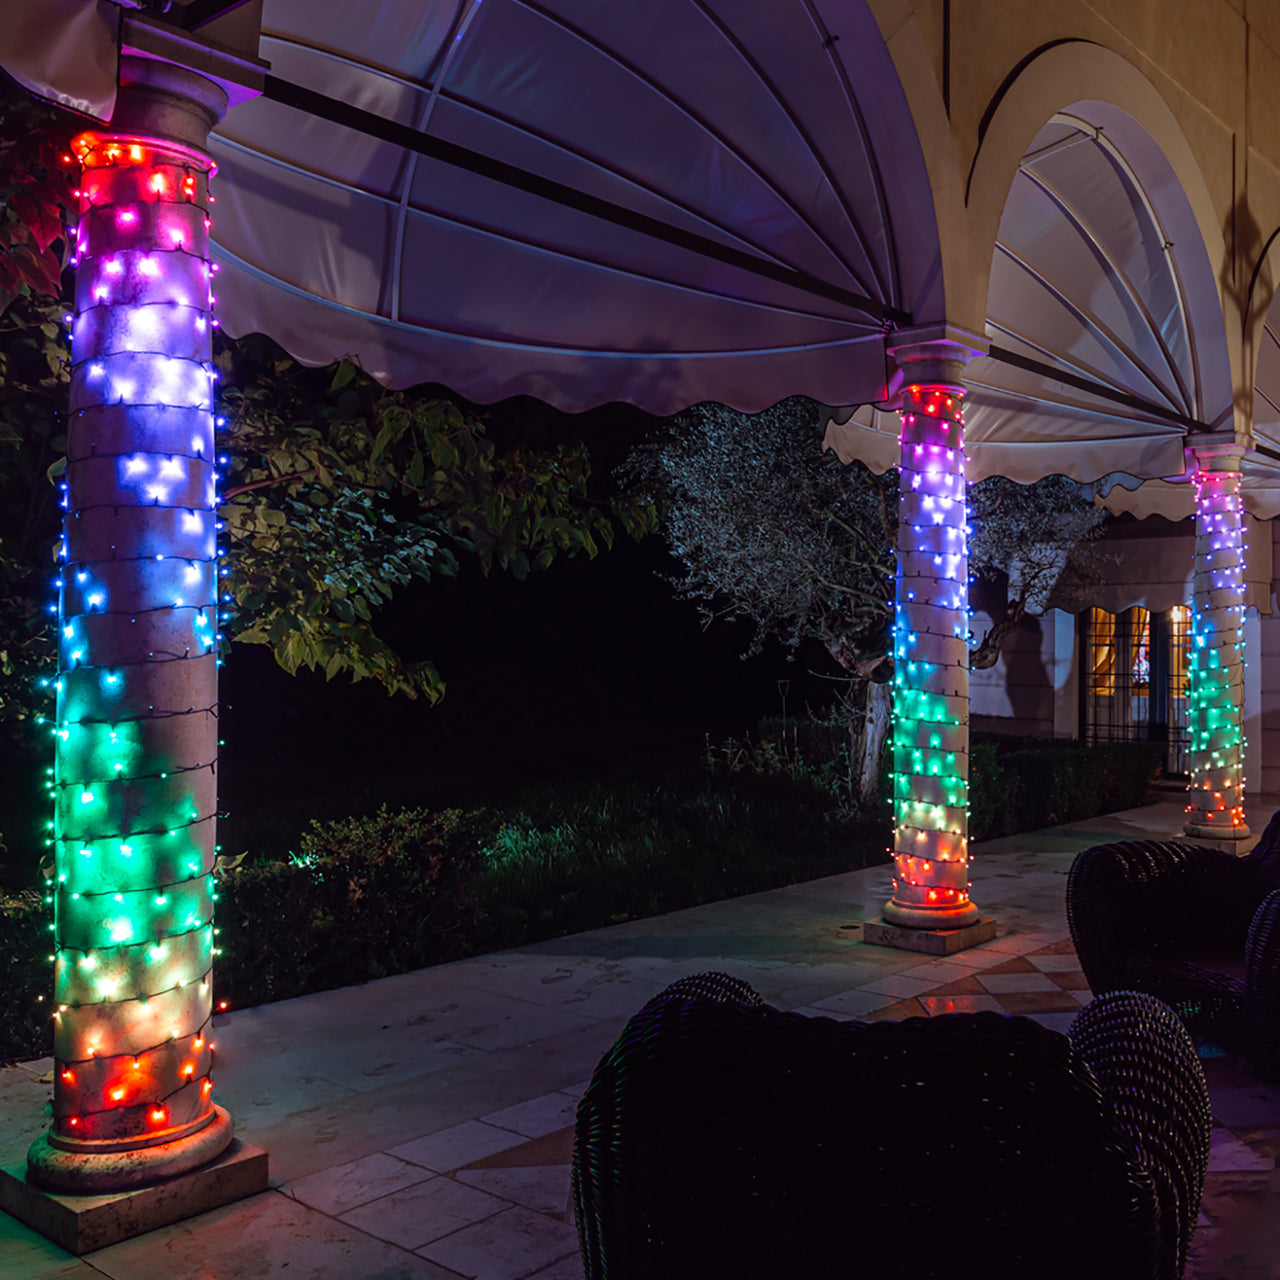 Guirlande Lumineuse Connectée Twinkly de 20m avec 250 LED Multicolores